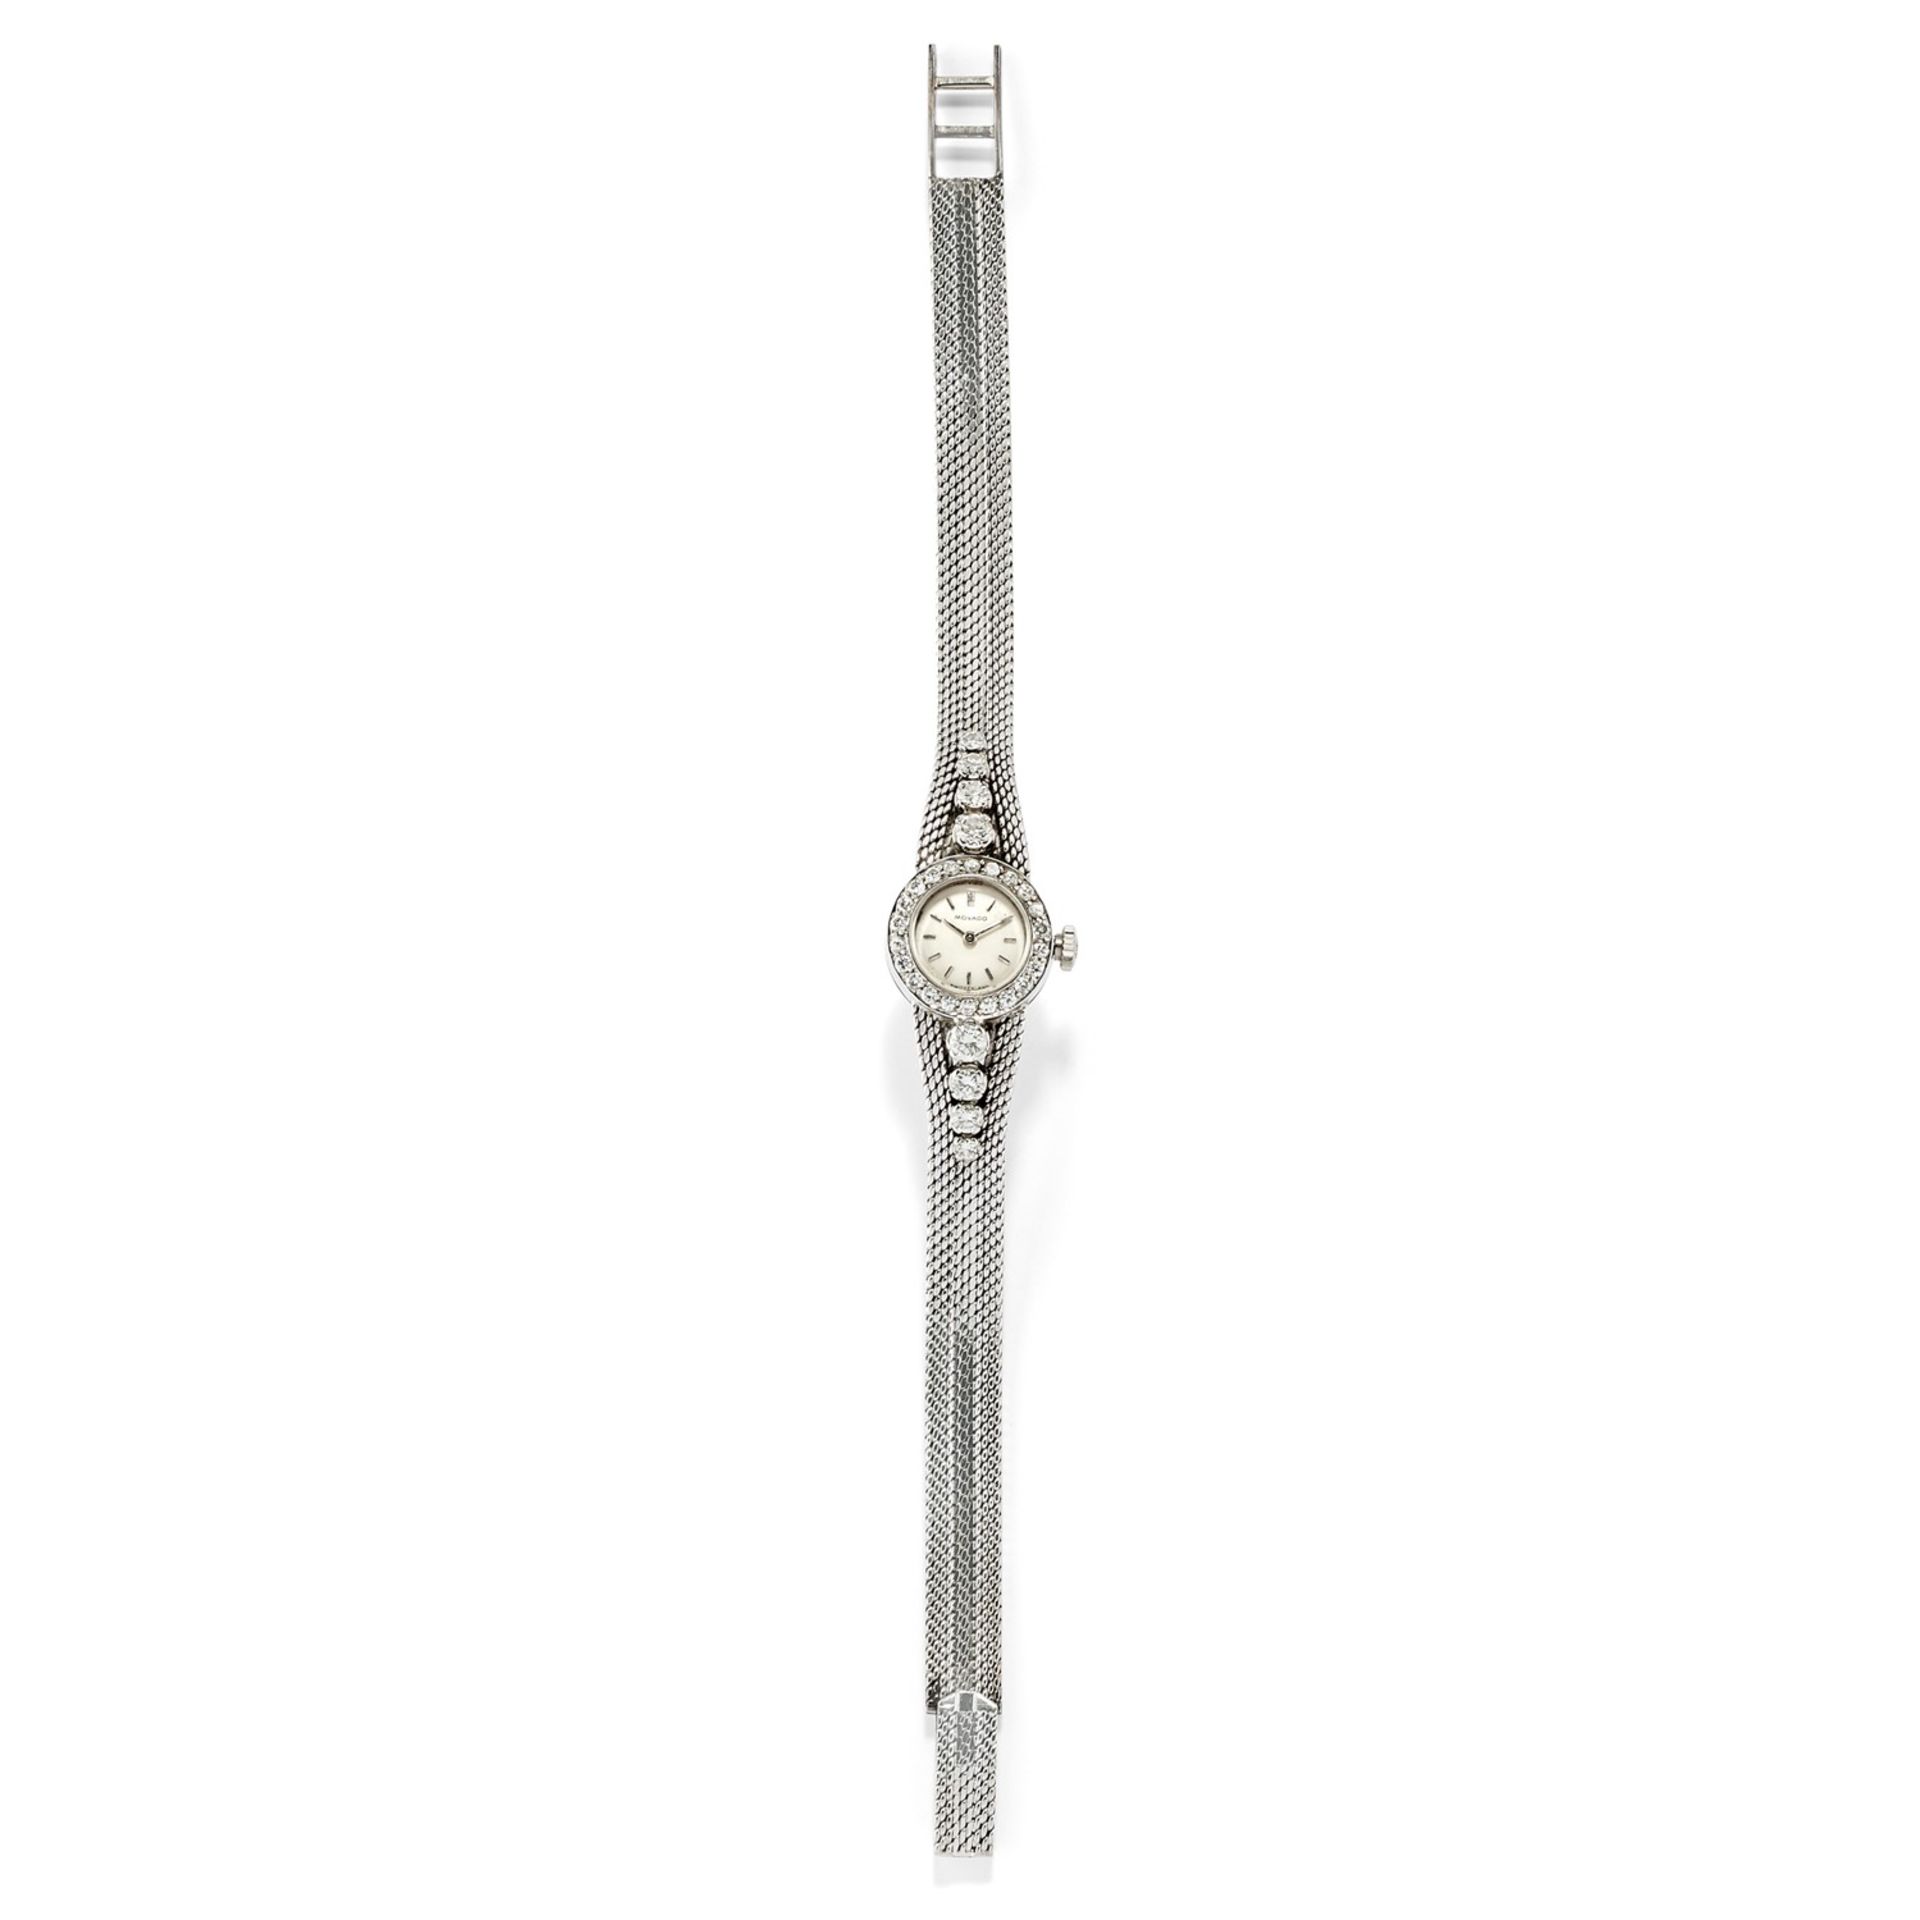 Movado - A 18K white gold lady's wristwatch, Movado - A 18K white gold lady's [...]